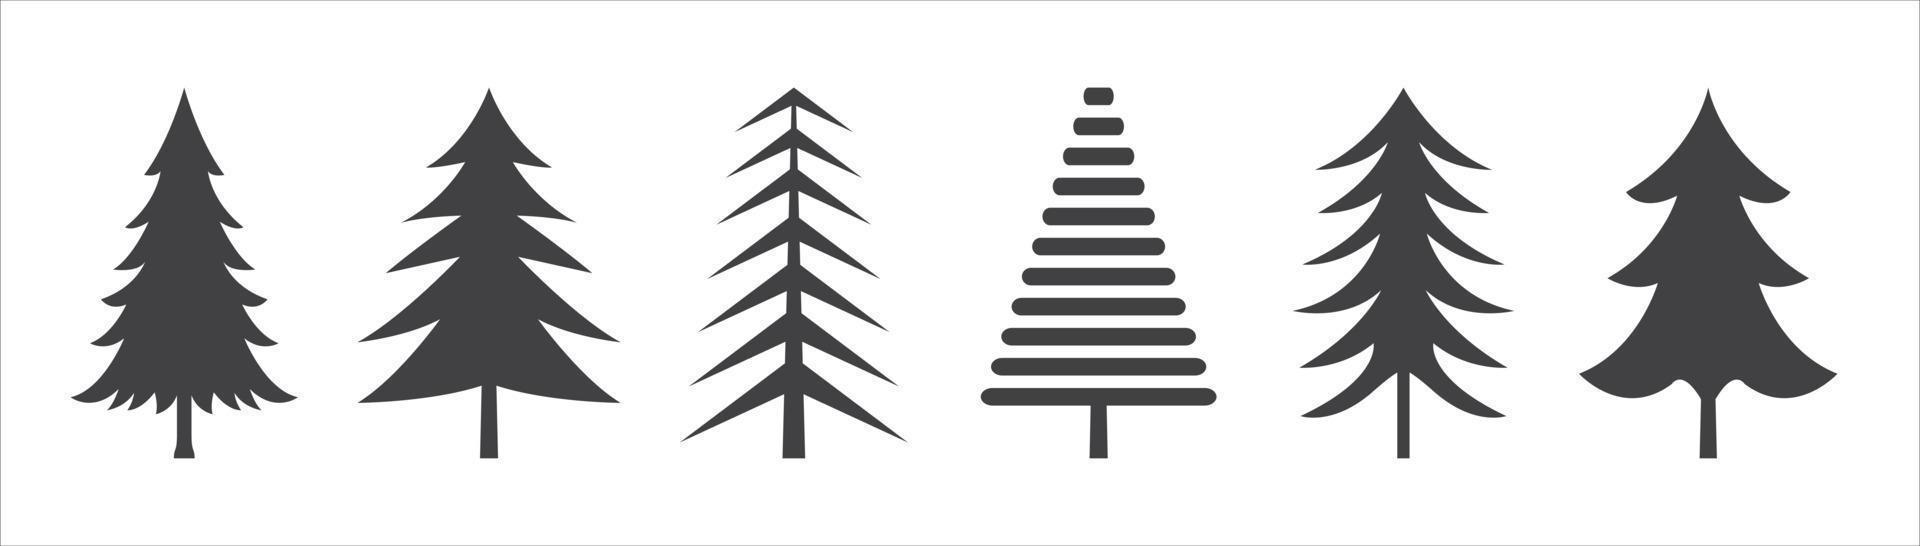 iconos de árbol de navidad vector silueta negra sobre fondo blanco.